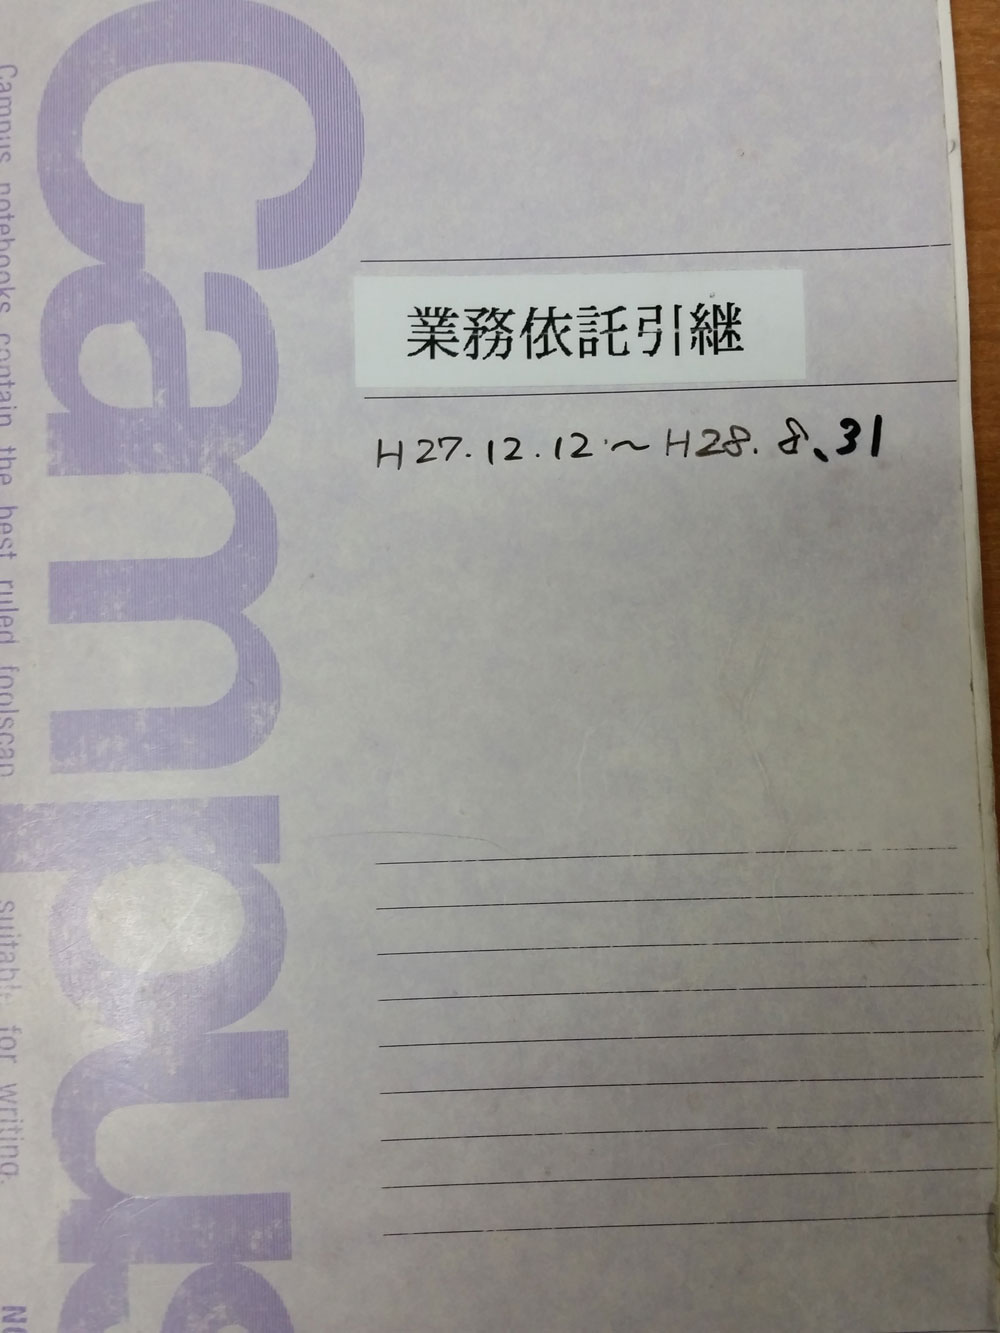 委託業務引継ノートH27.12.12〜H28.8.31